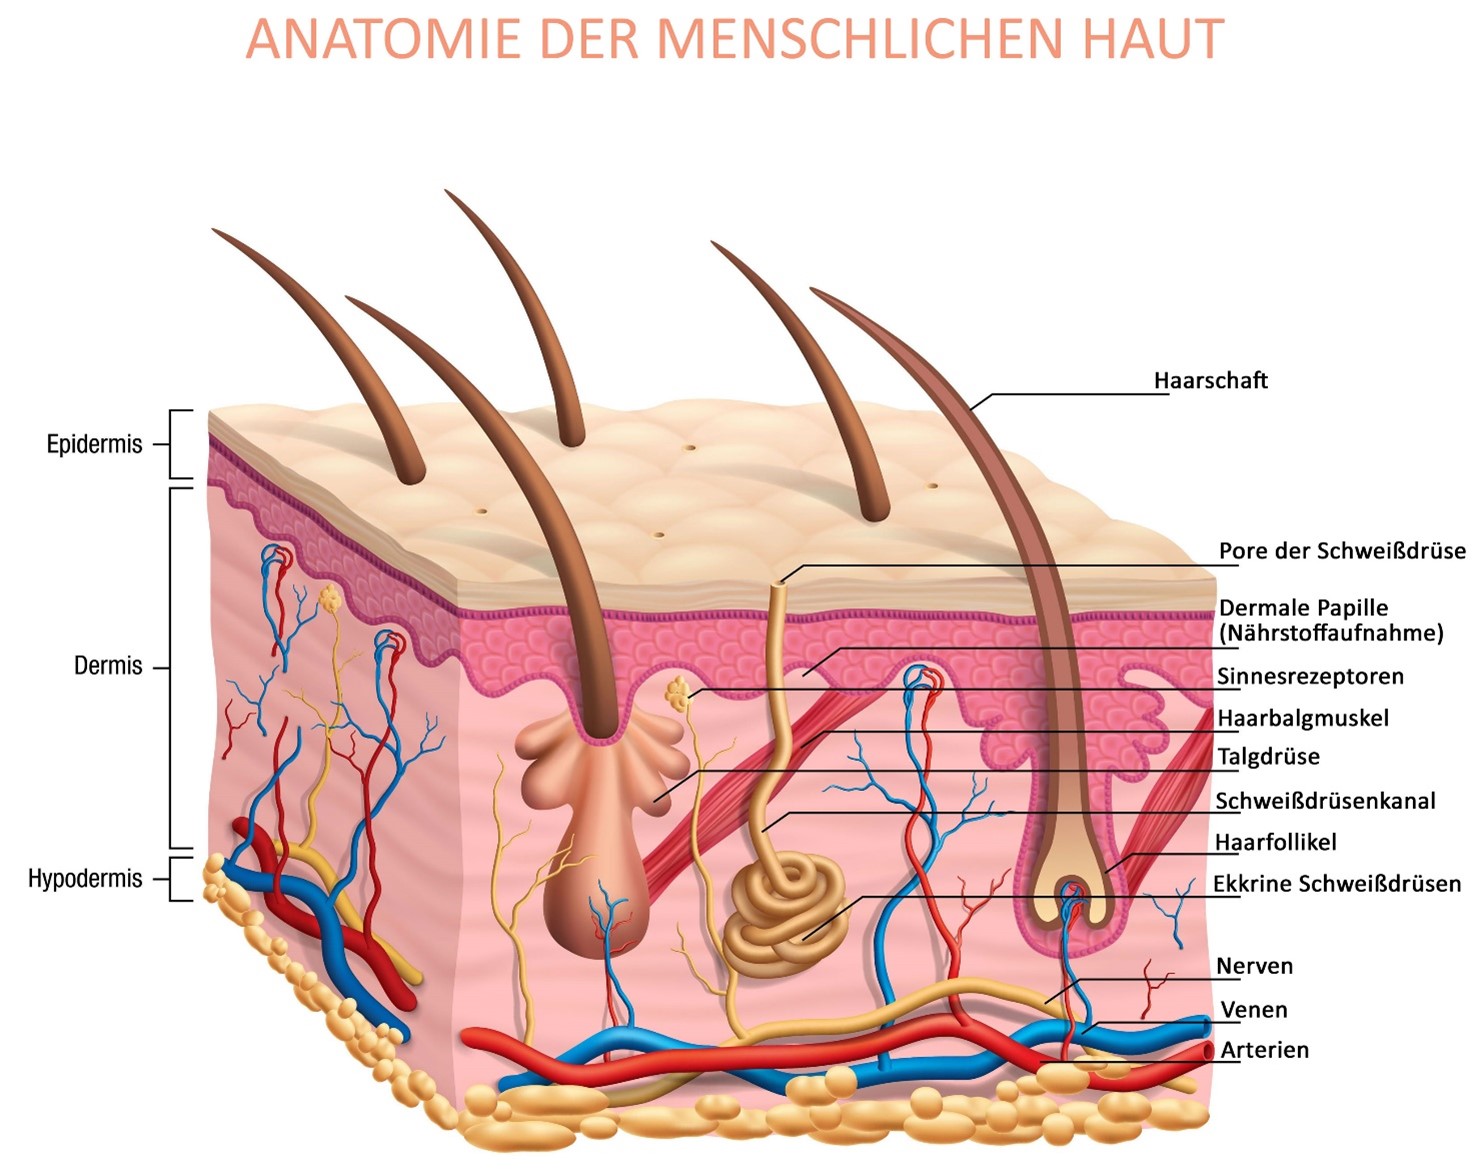 Anatomie der menschlichen Haut